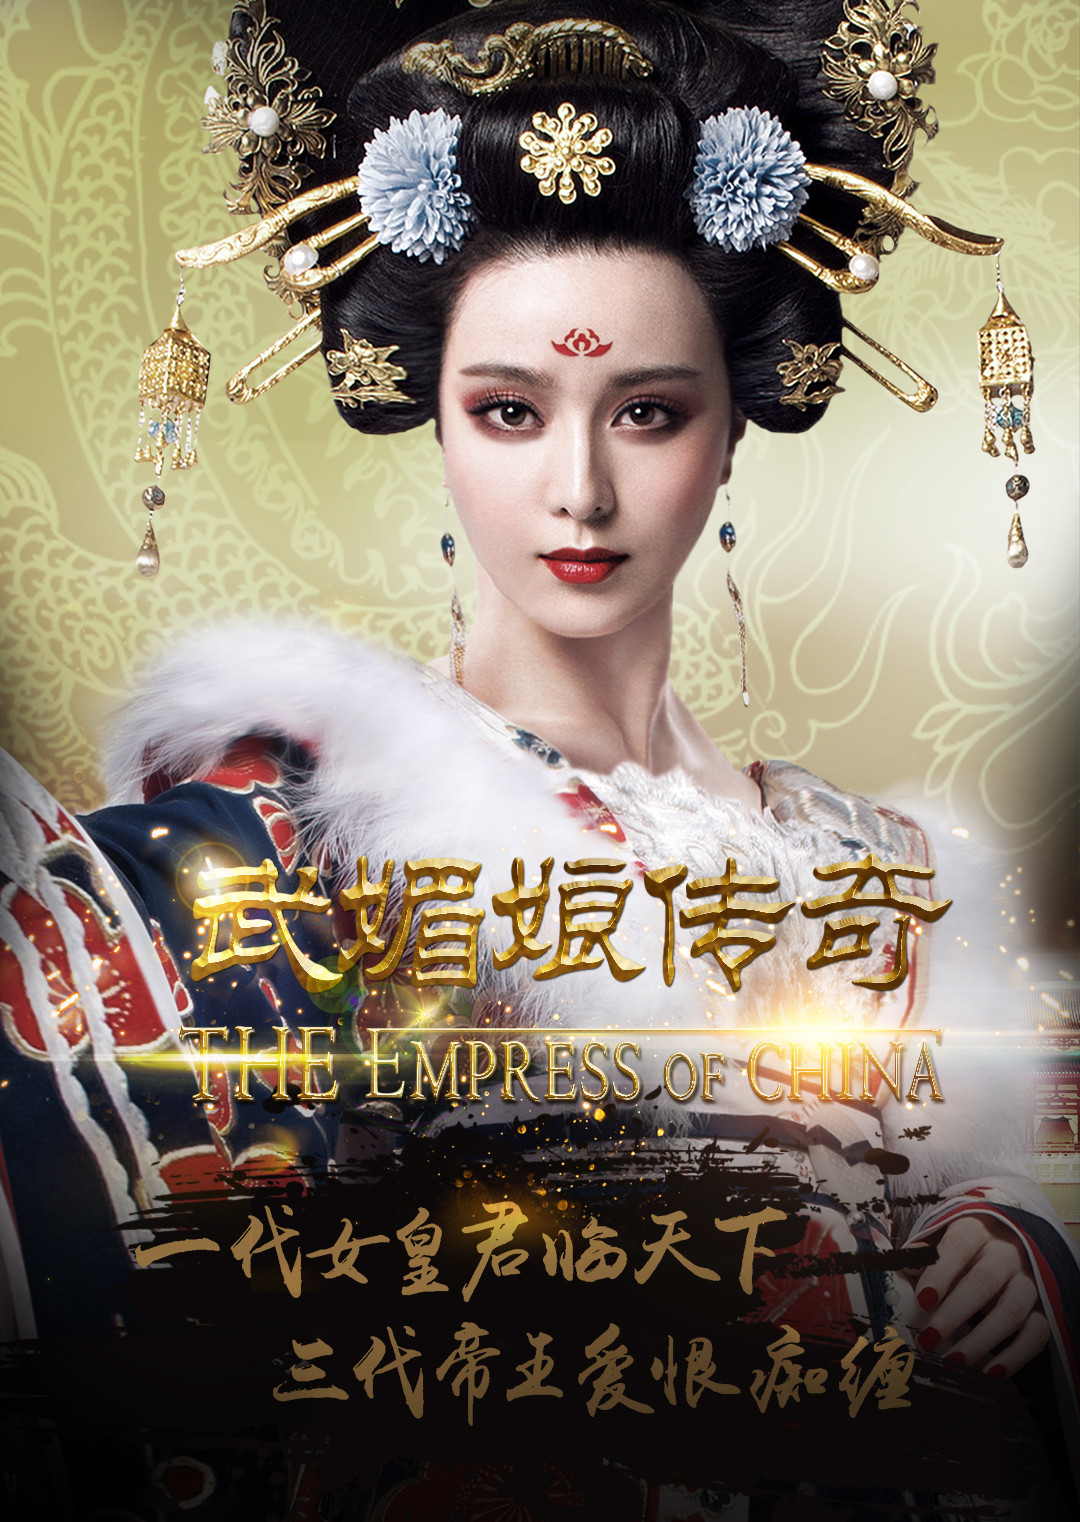 武媚娘传奇(The Empress of China) - 电视剧图片 | 电视剧剧照 | 高清海报 - VeryCD电驴大全